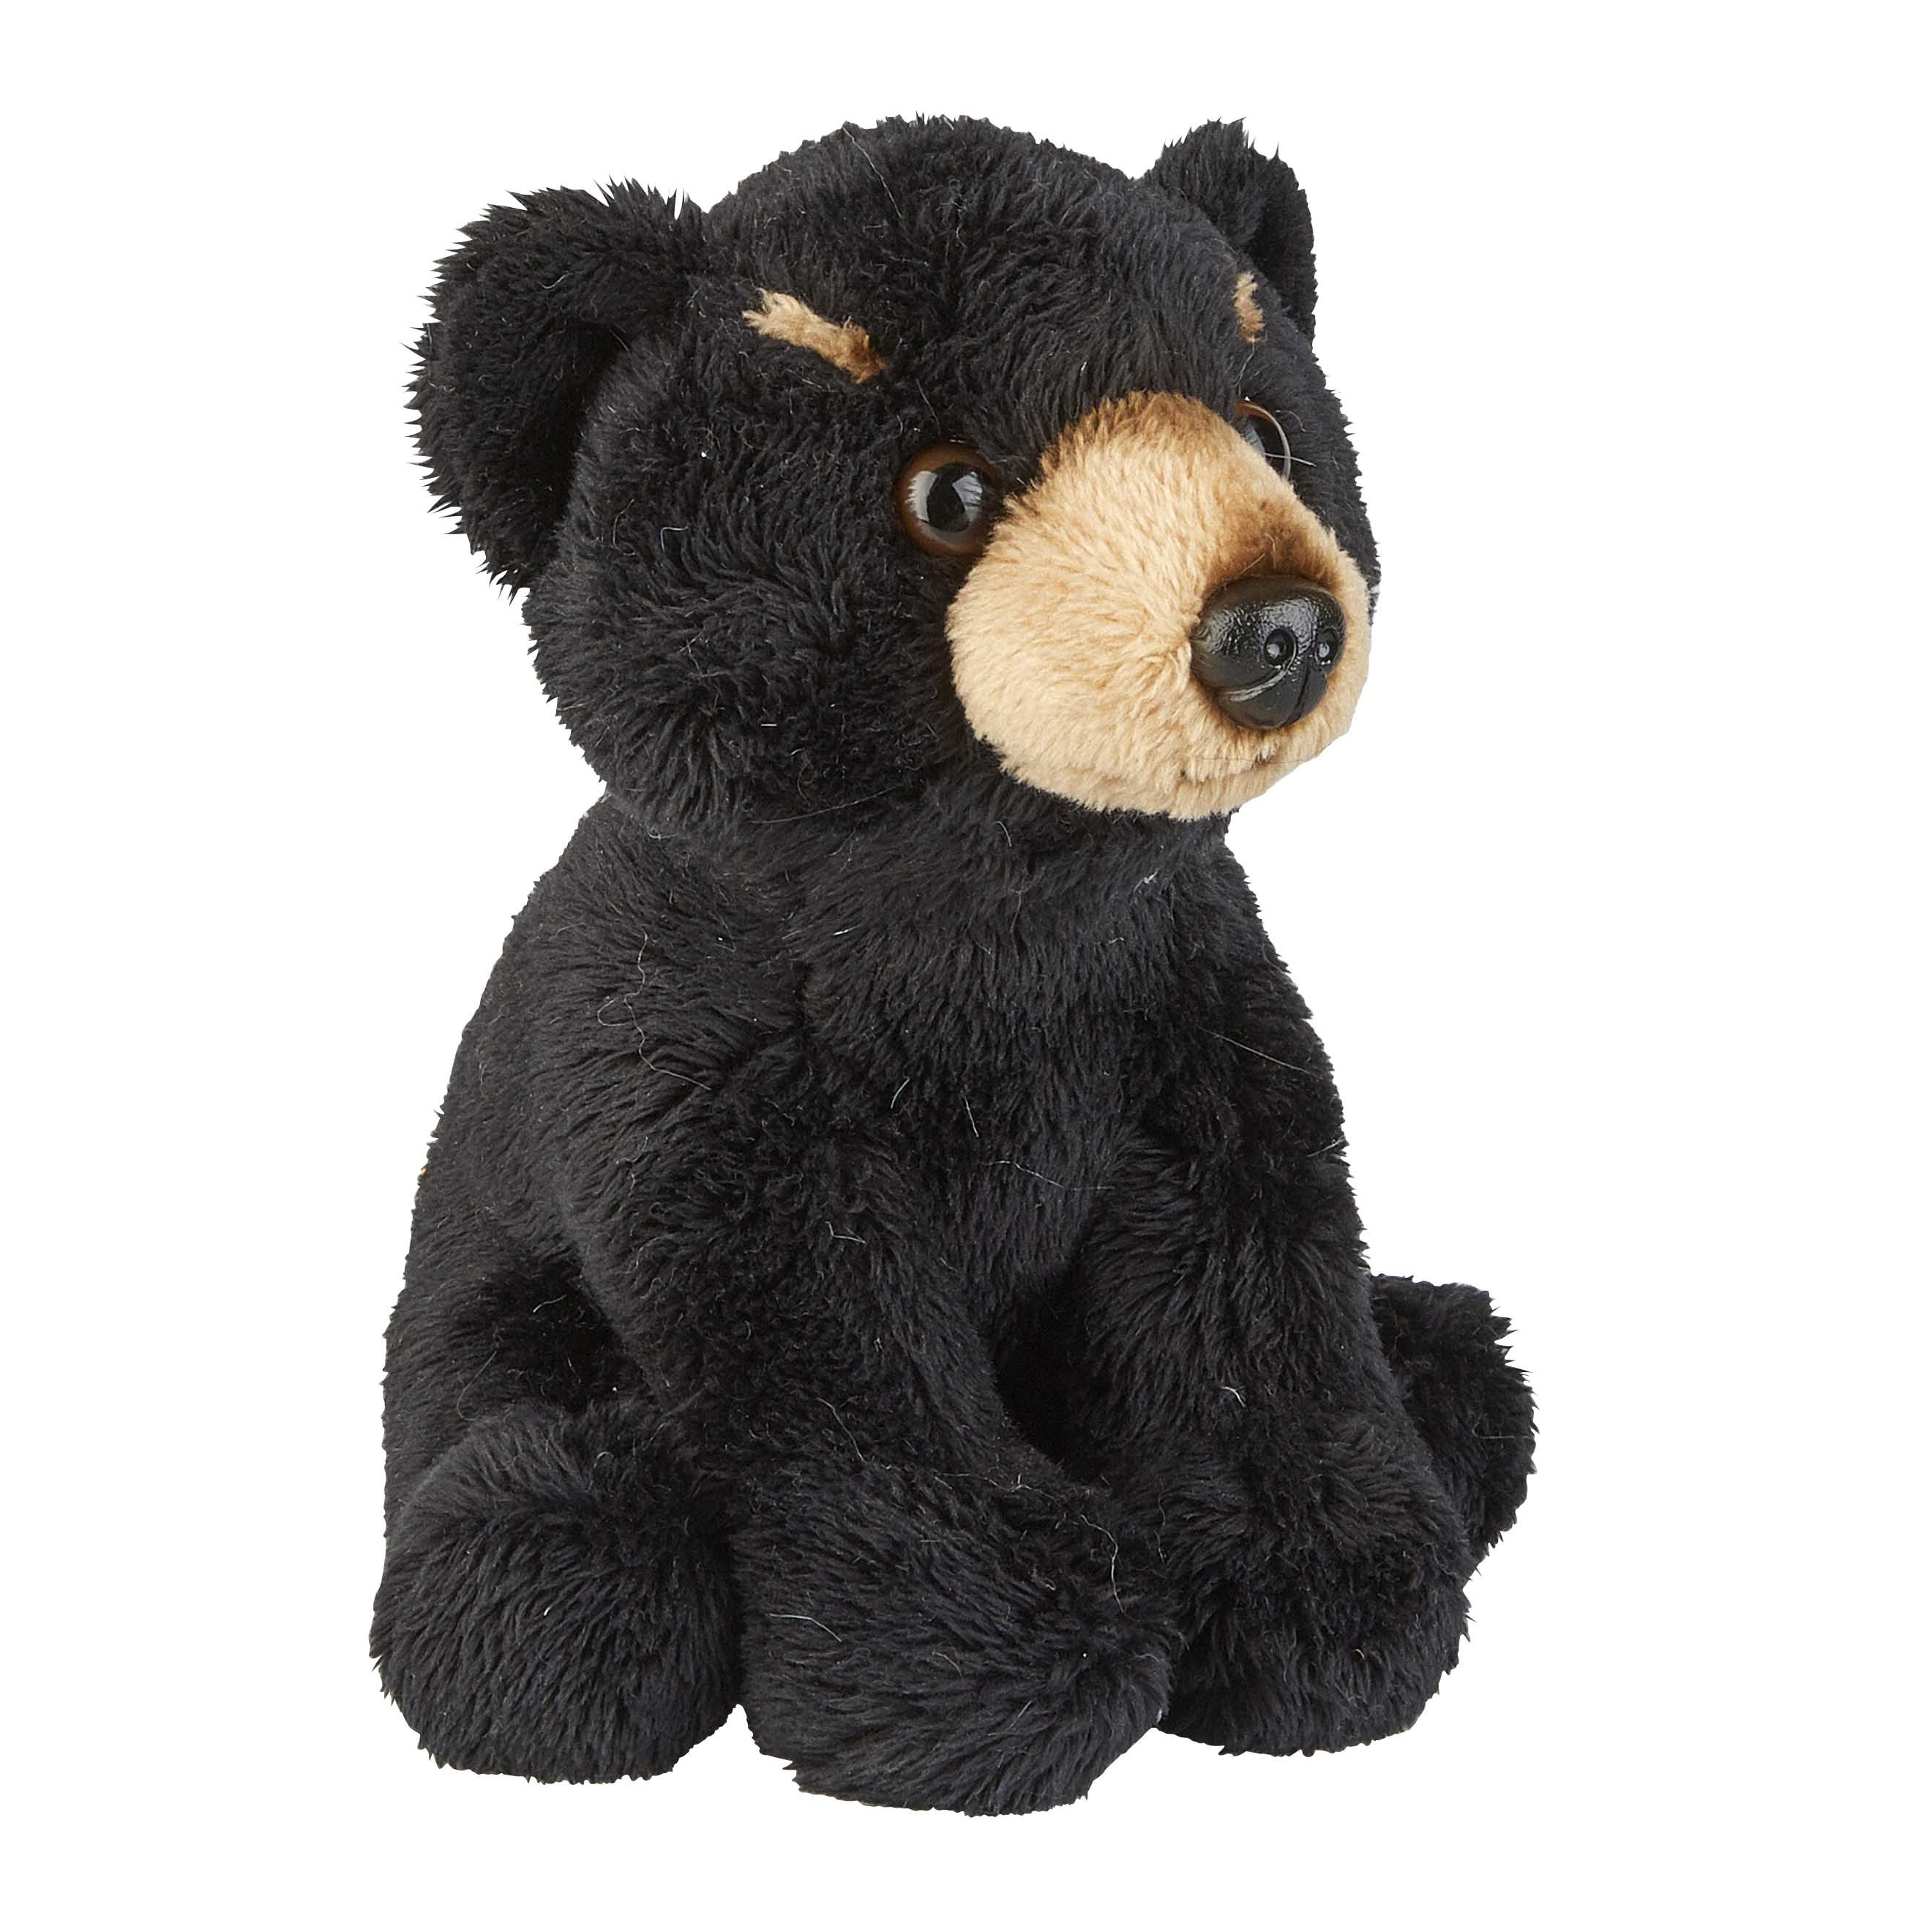 Pluche knuffel dieren zwarte beer 15 cm